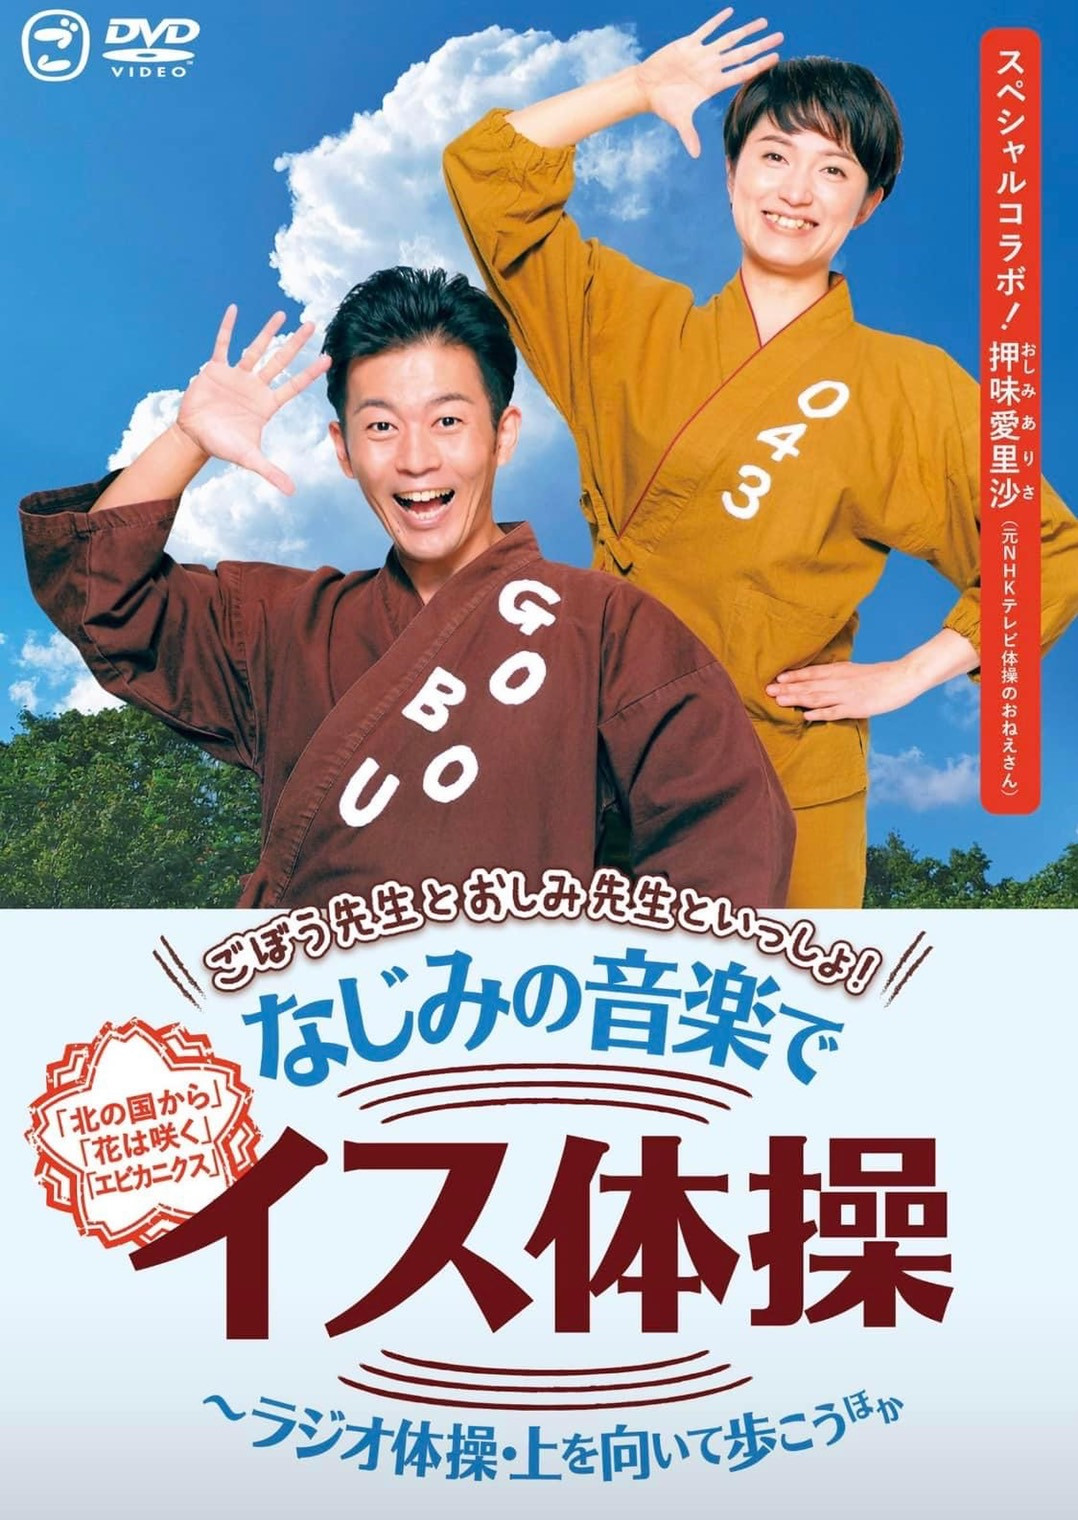 「ごぼう先生とおしみ先生といっしょ！なじみの音楽でイス体操」DVD発売しました